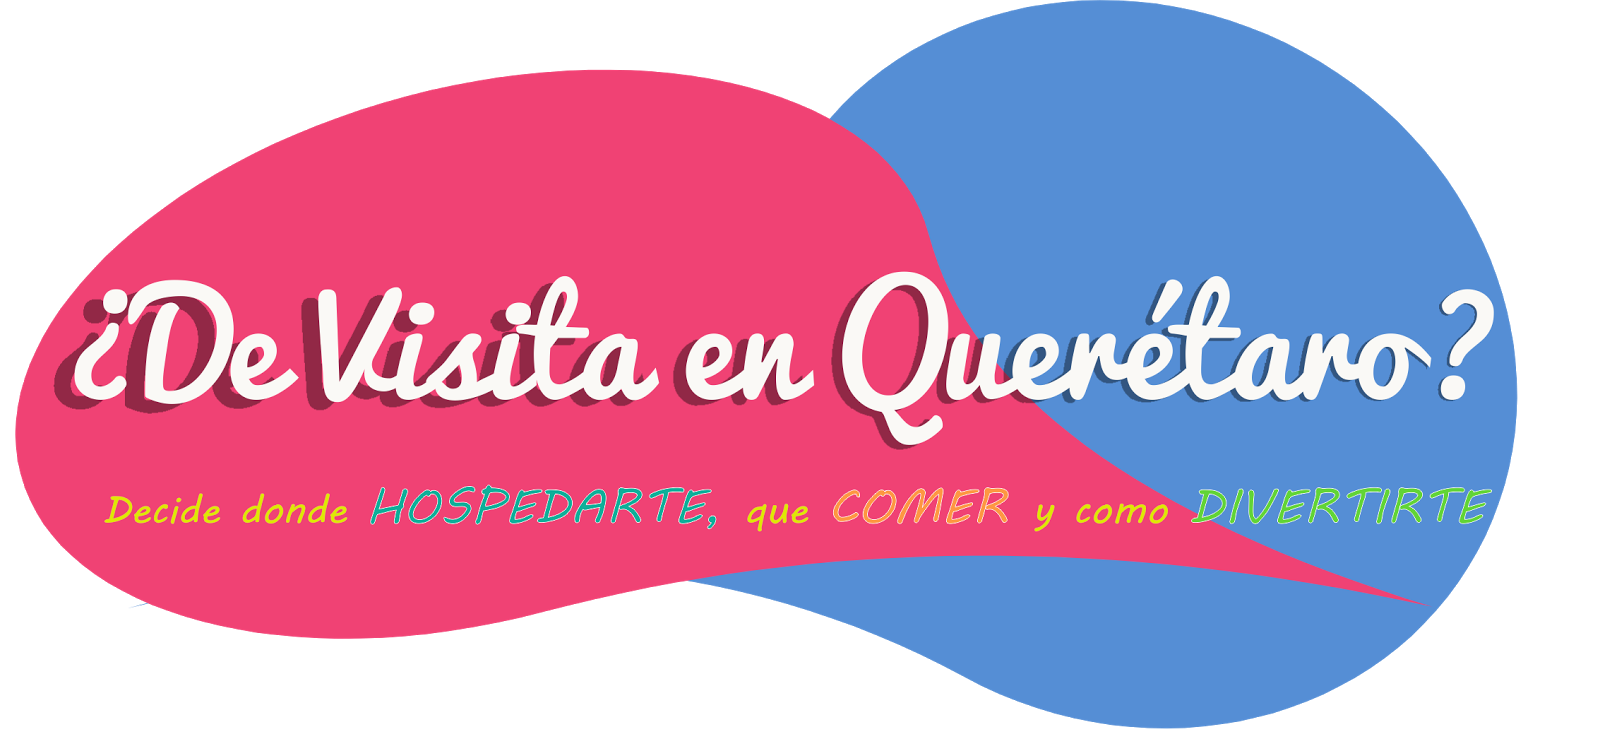 ¿De visita en Querétaro?